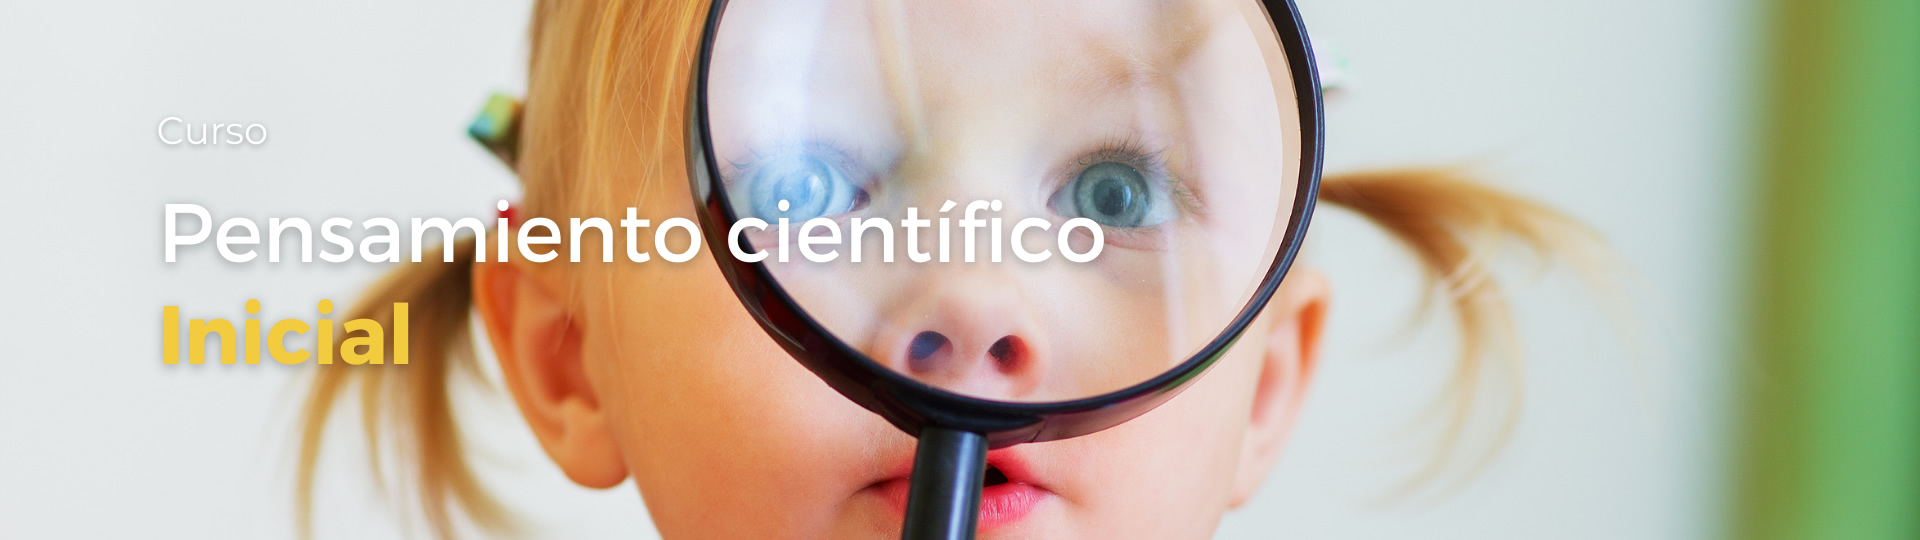 Imagen de portada de Curso "Pensamiento científico" - Se visualiza una Nena observando a través de una lupa